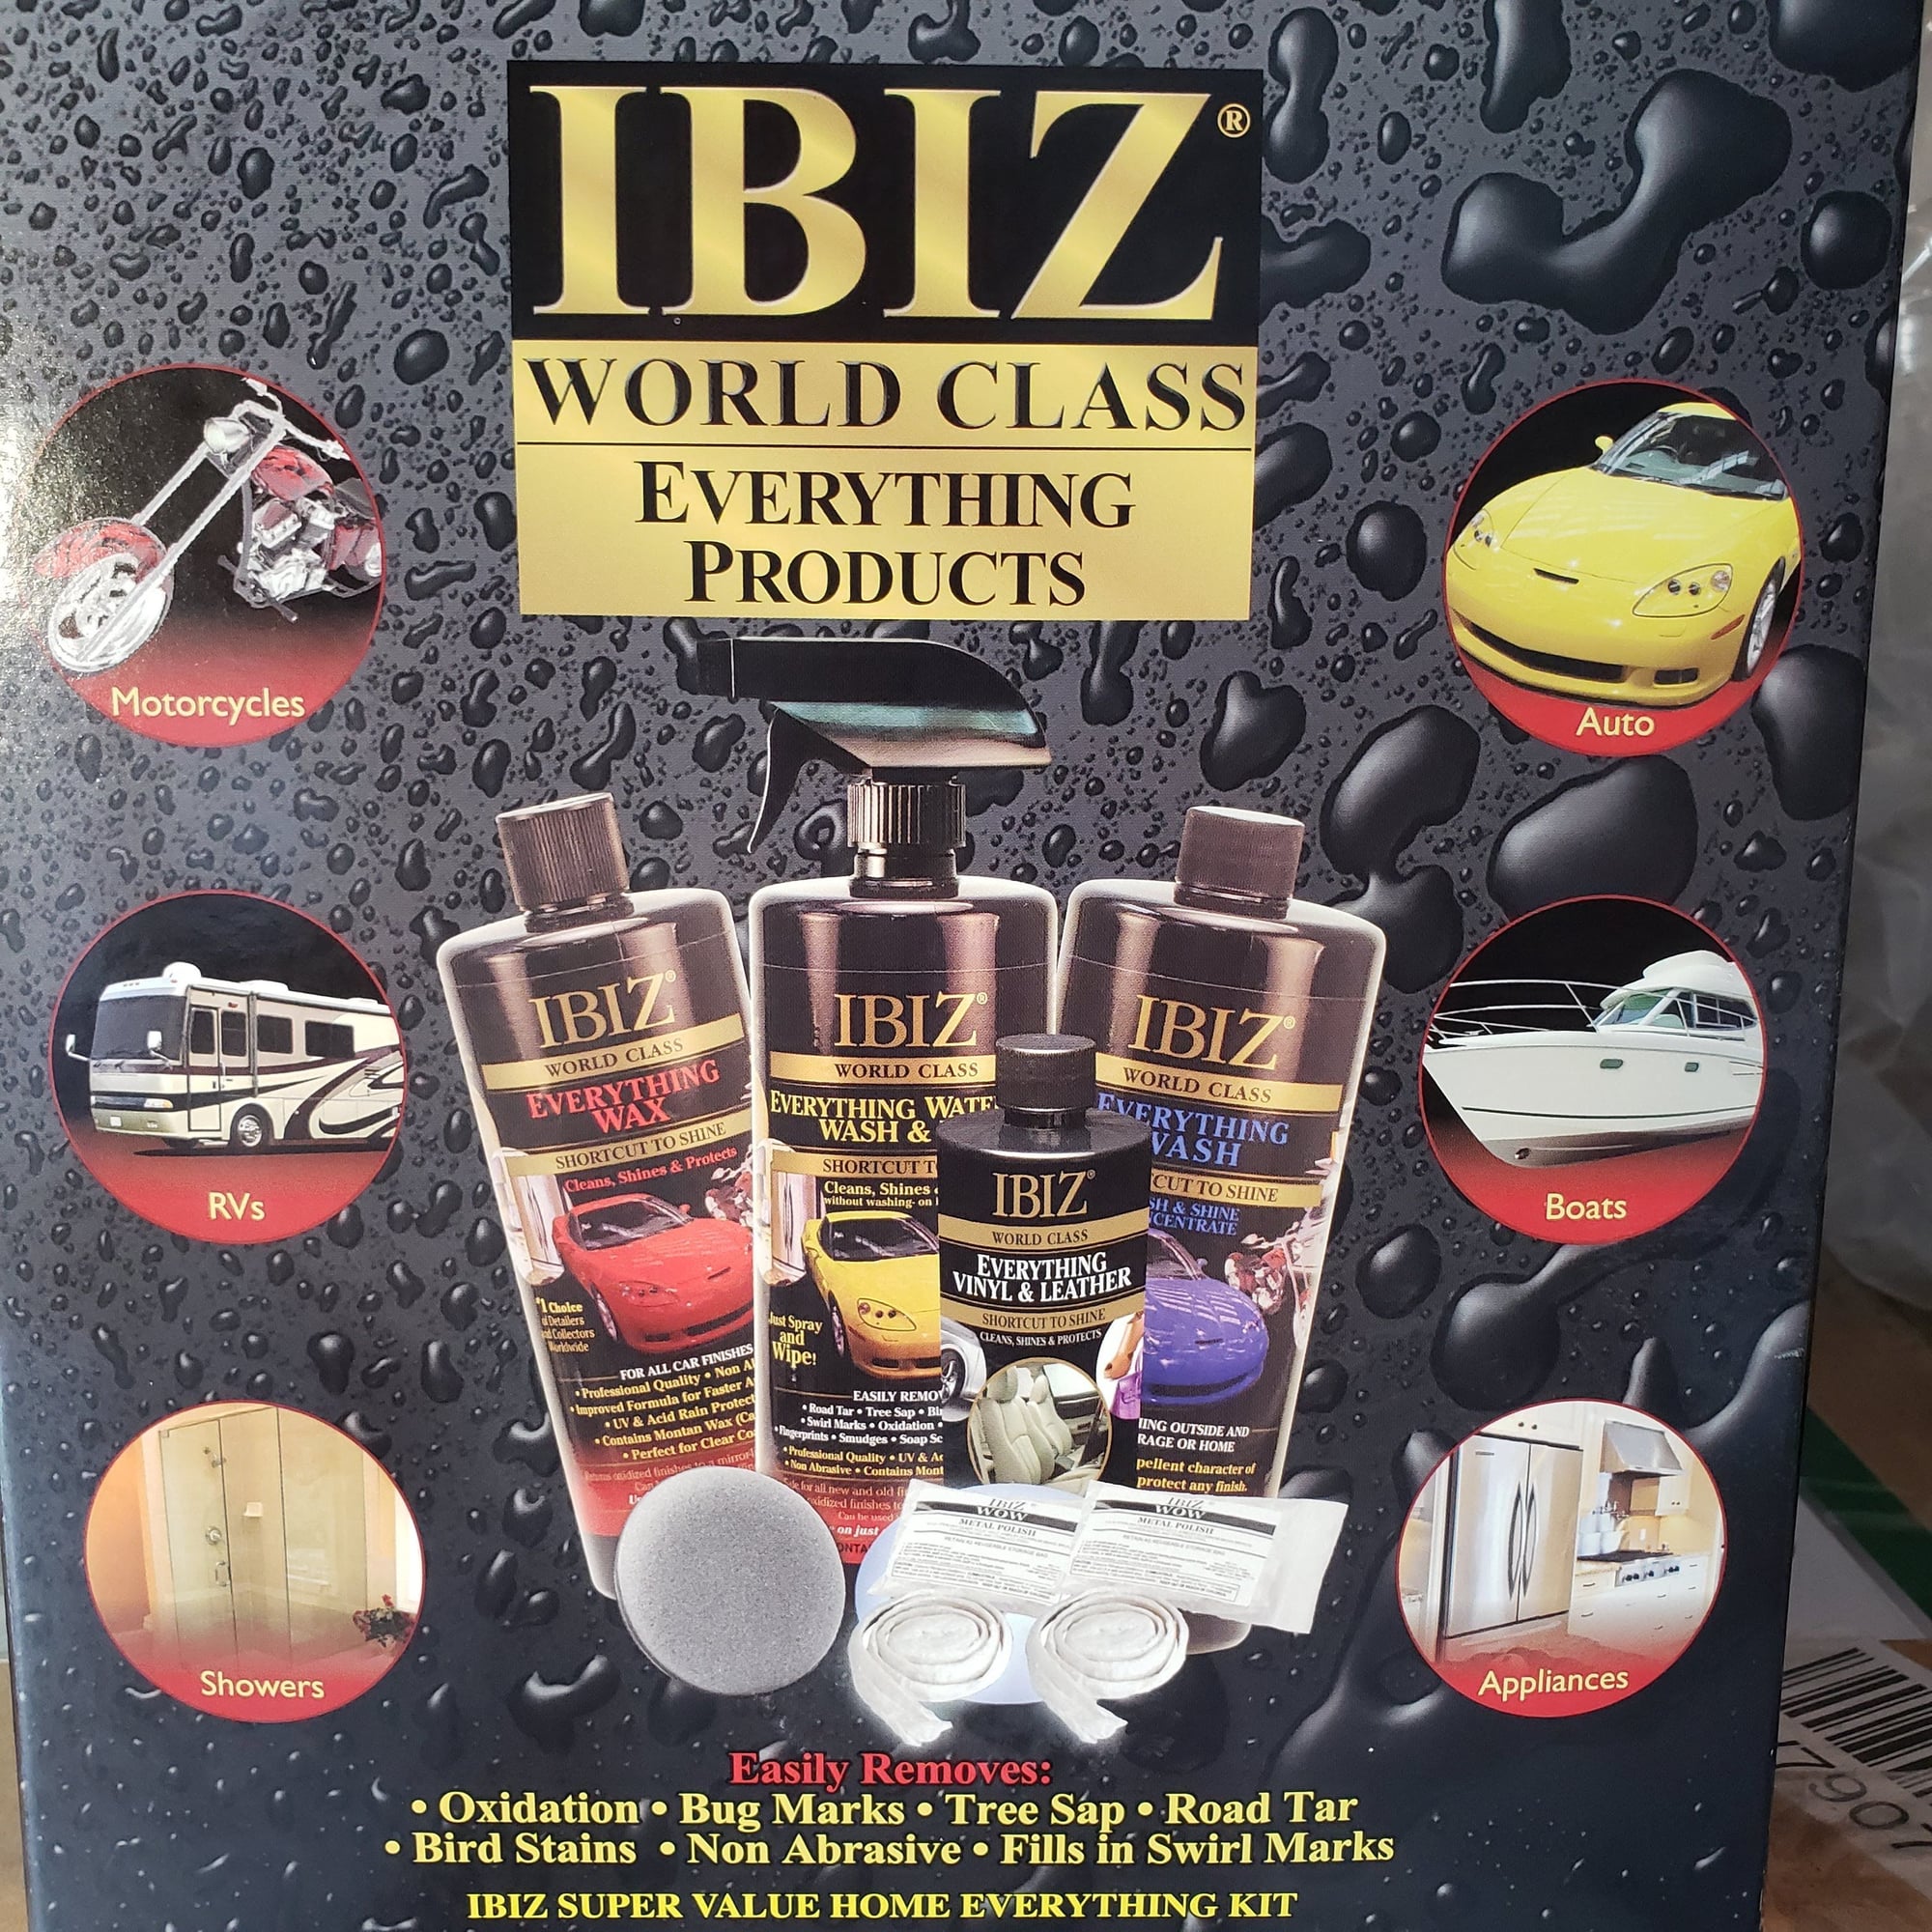 ibiz wax uses